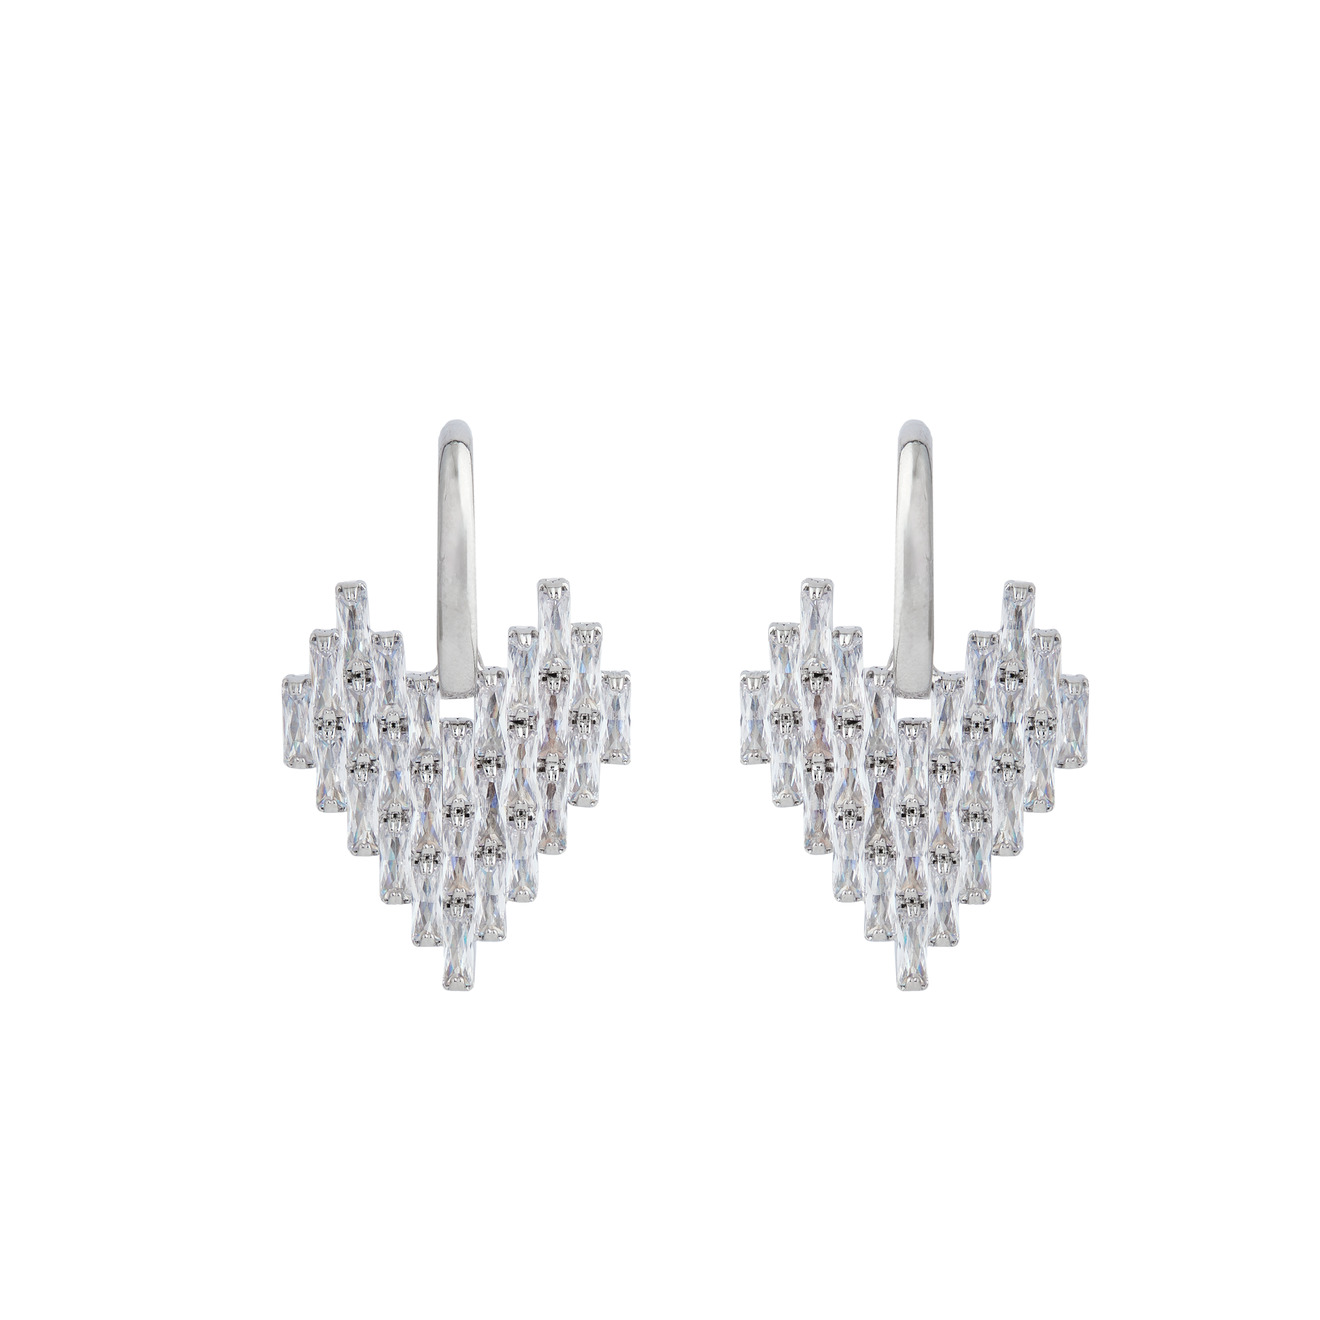 herald percy серебристые серьги с дорожками кристаллов Herald Percy Серебристые серьги-сердца с багетами кристаллов